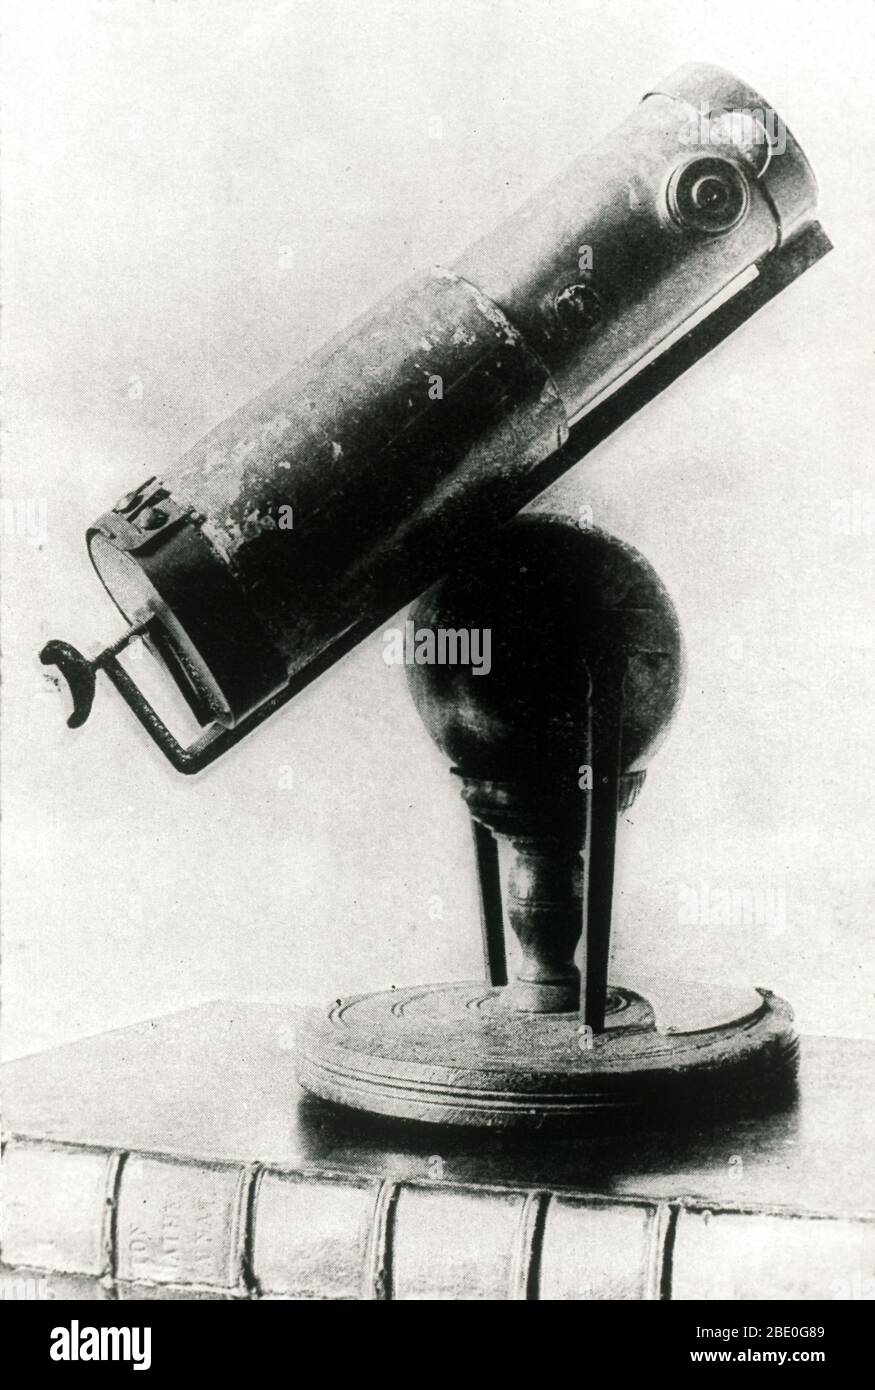 El telescopio reflectante de Sir Isaac Newton, conocido también como el  telescopio Newtoniano. Funcionó concentrando la luz por reflexión desde un  espejo parabólico, en lugar de por refracción a través de una